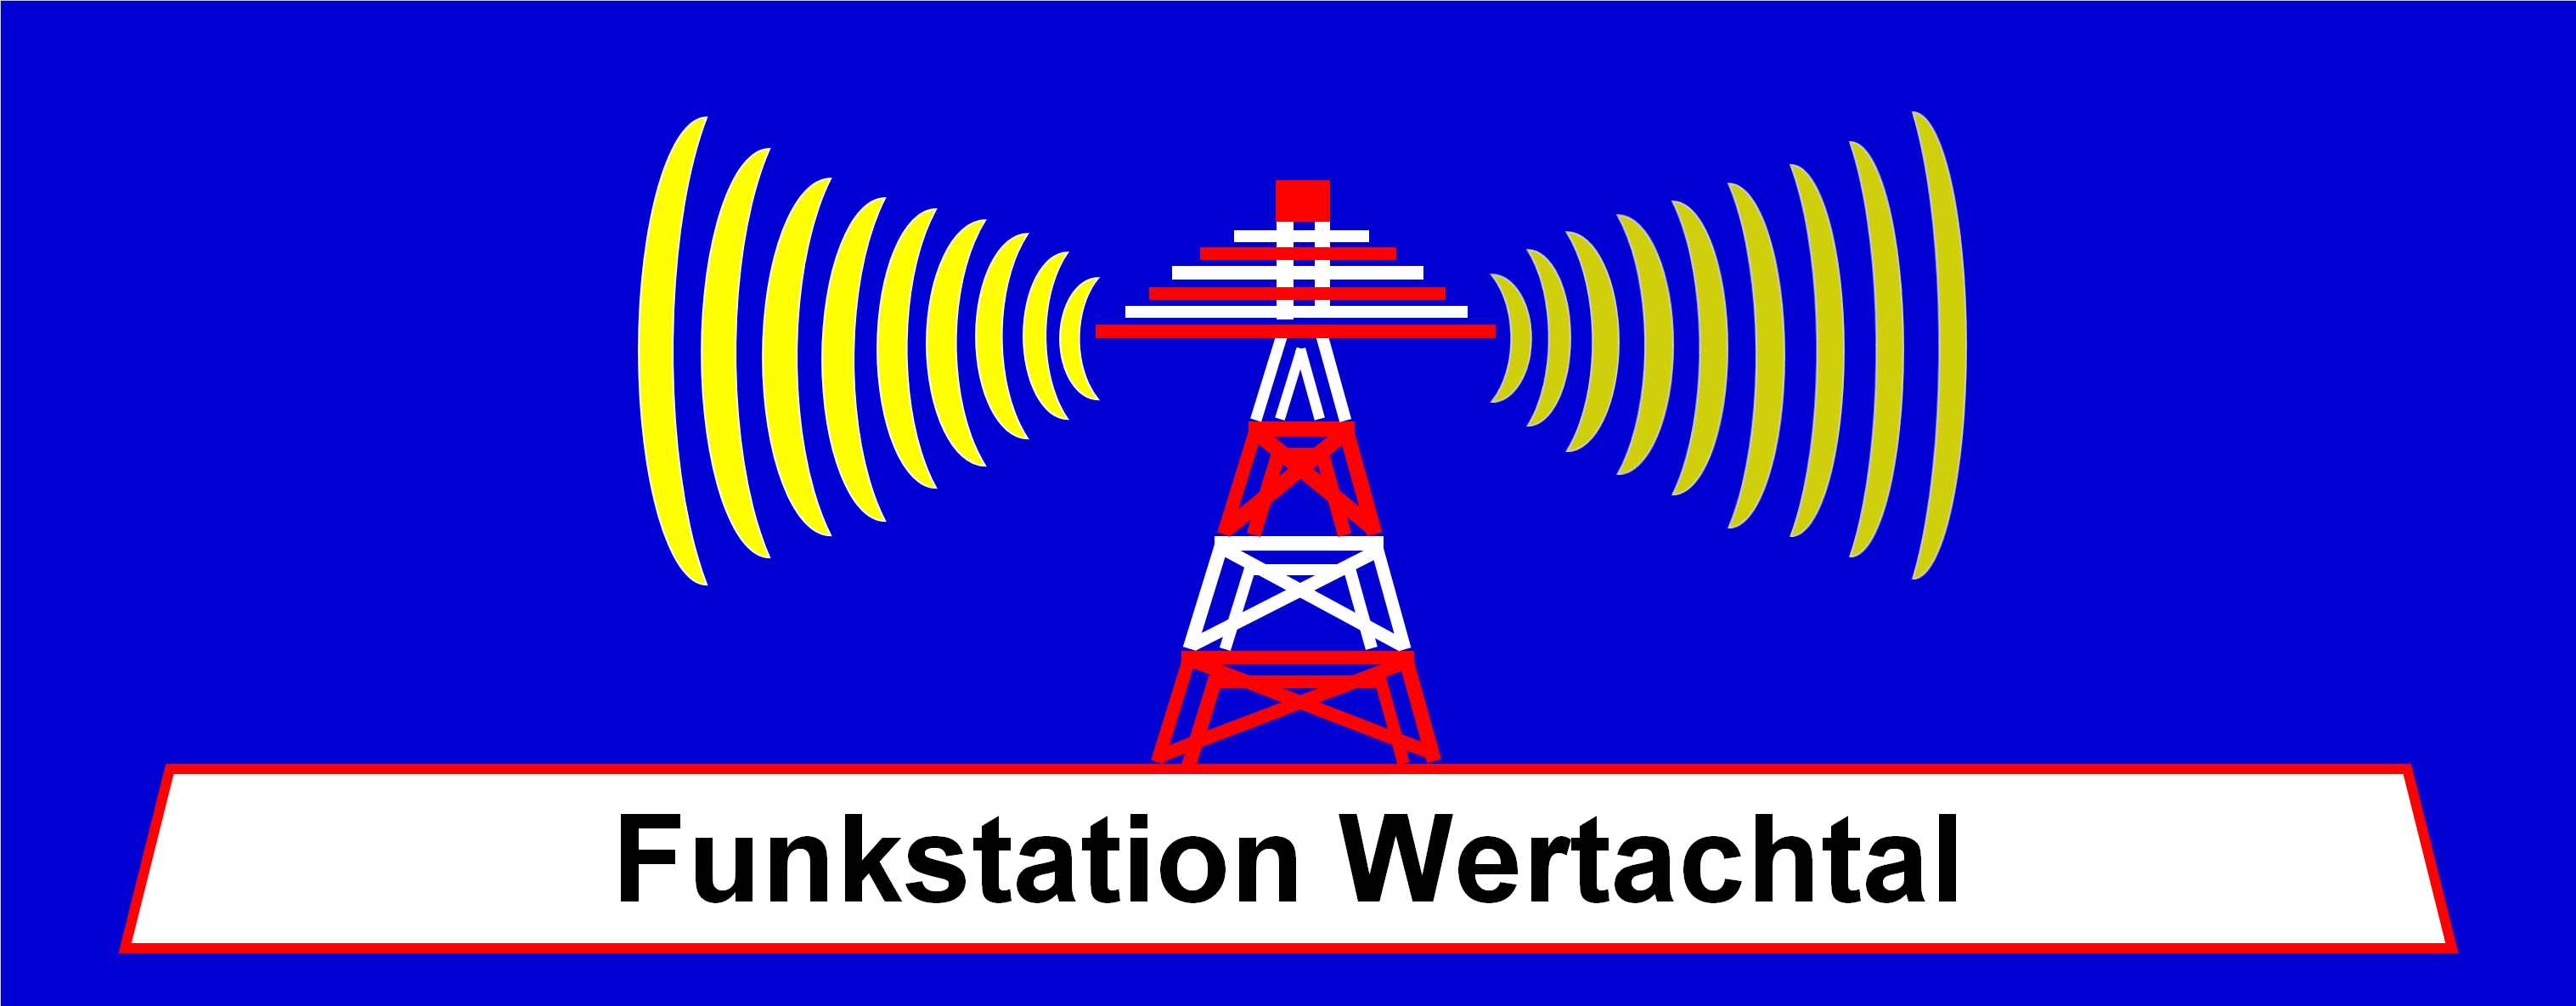 Funkstation Wertachtal